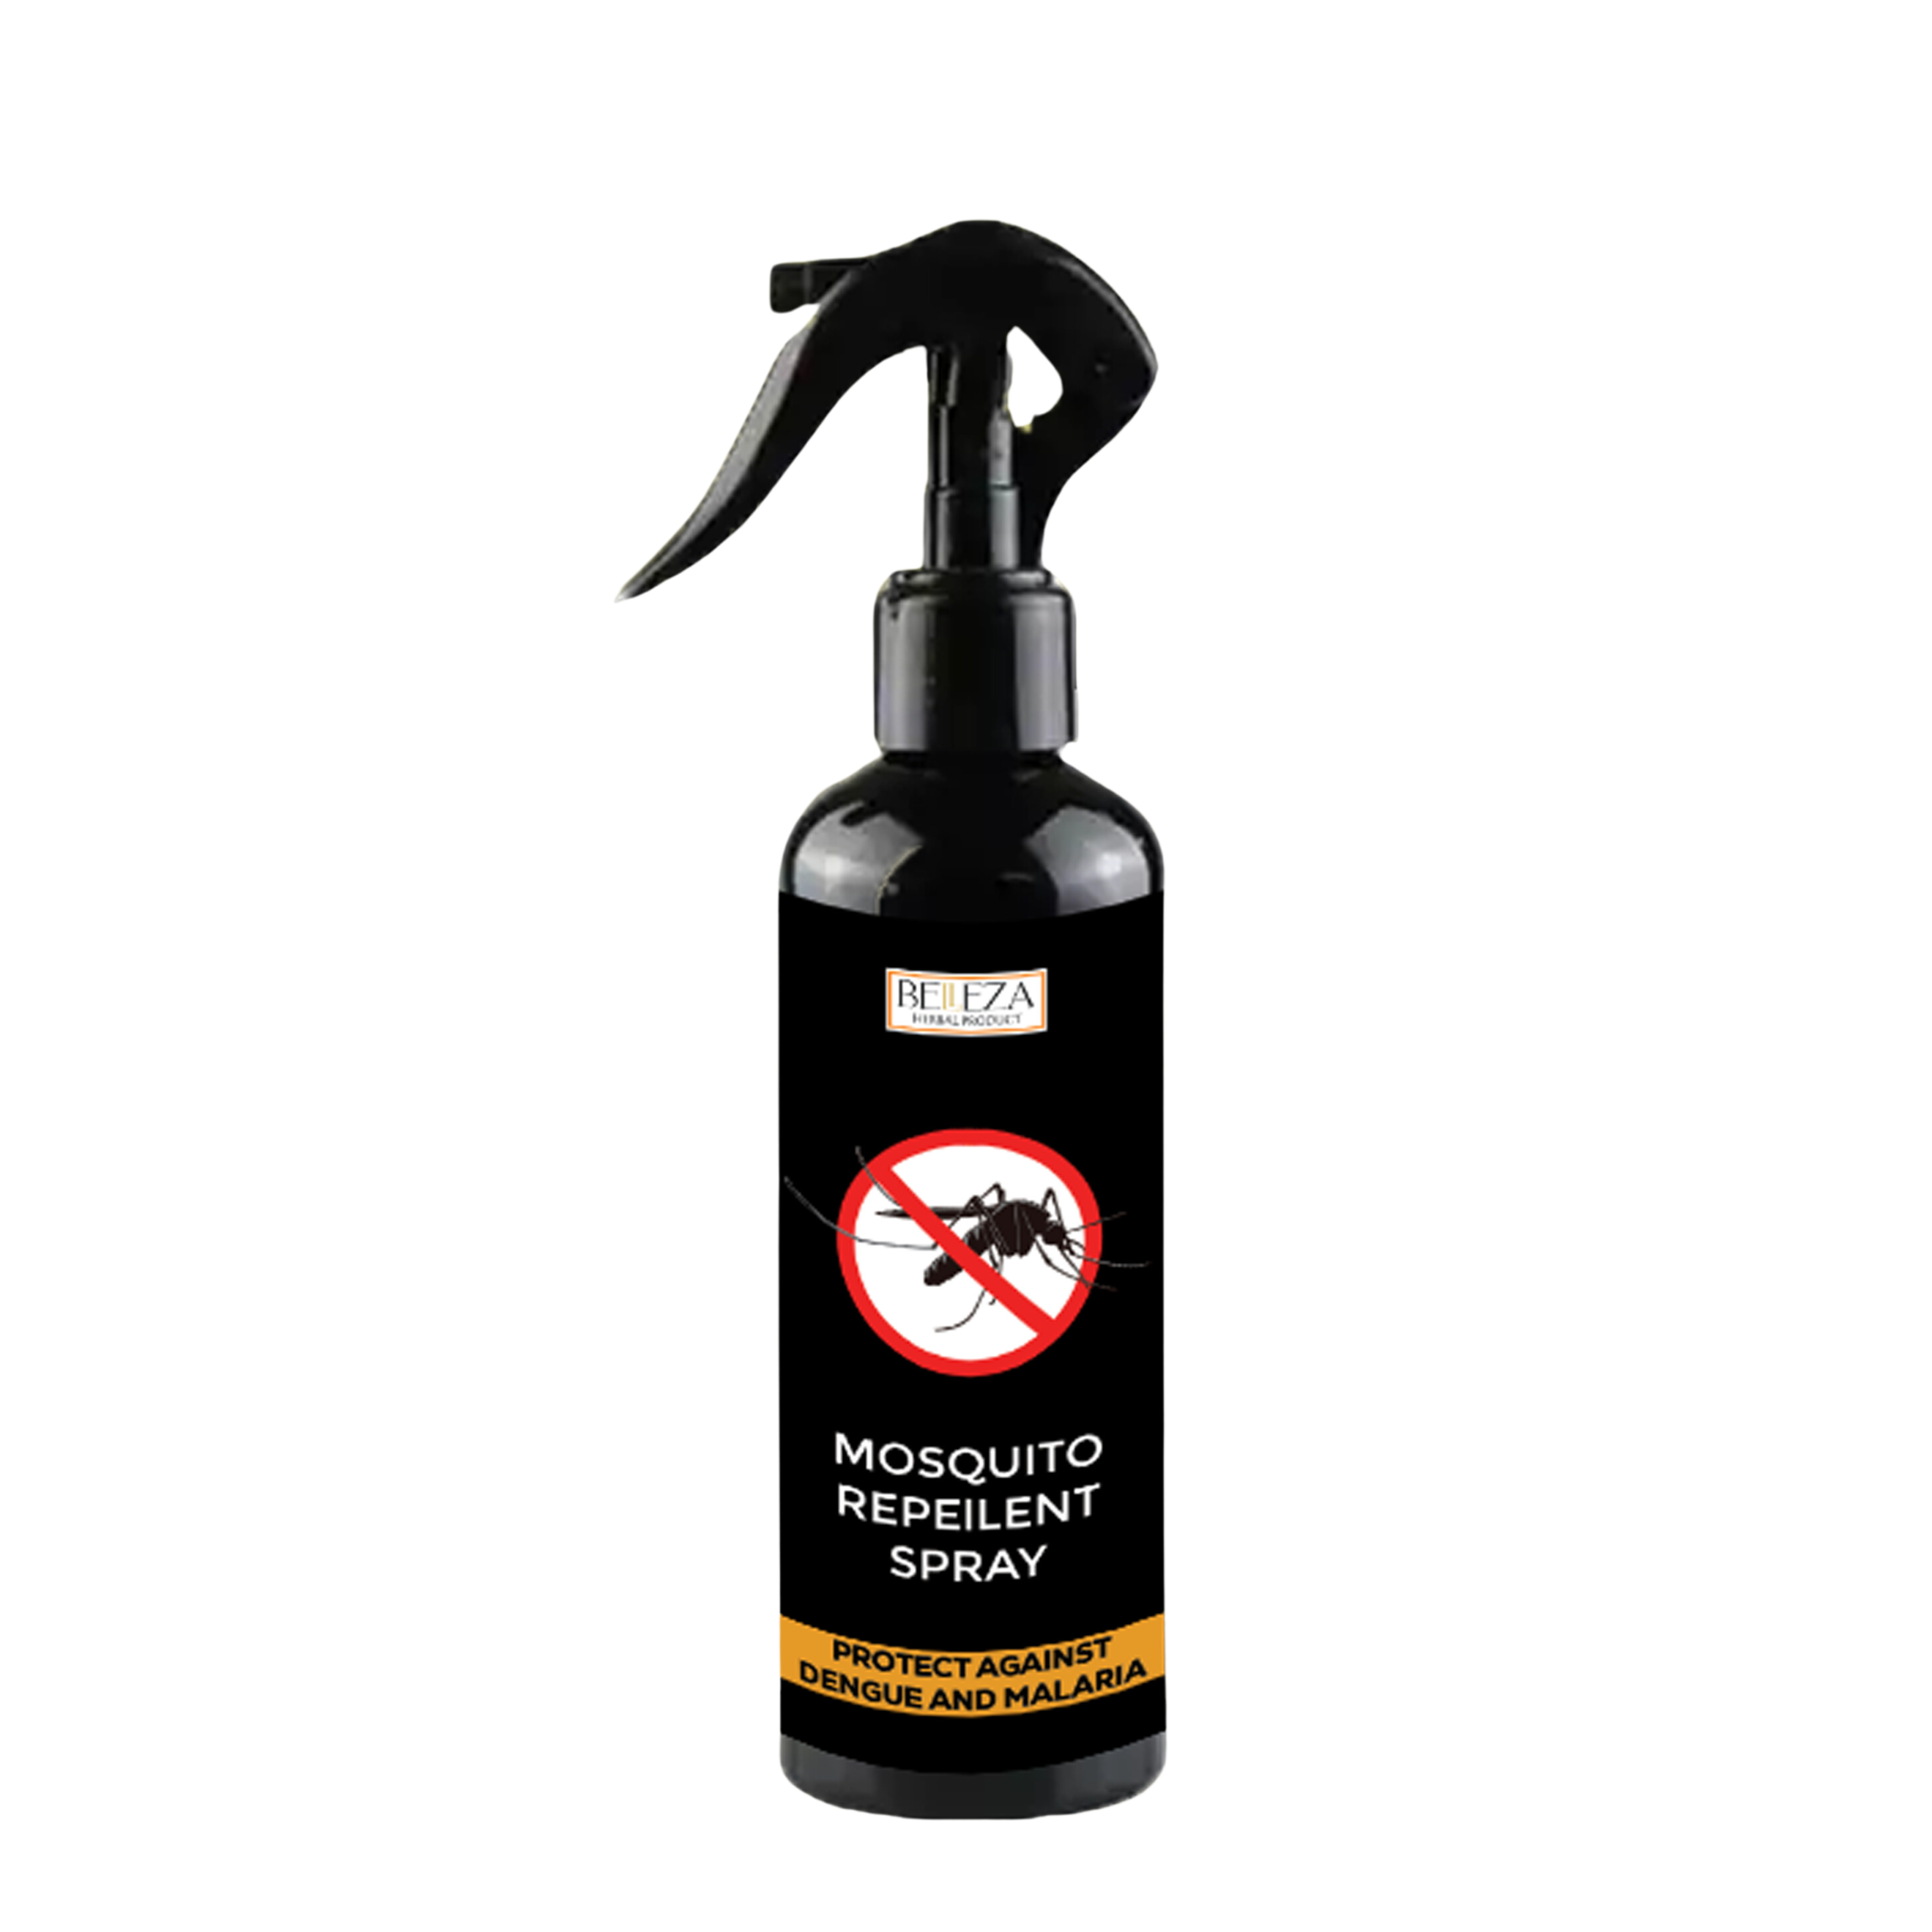 Mosquito Repeilent Spray